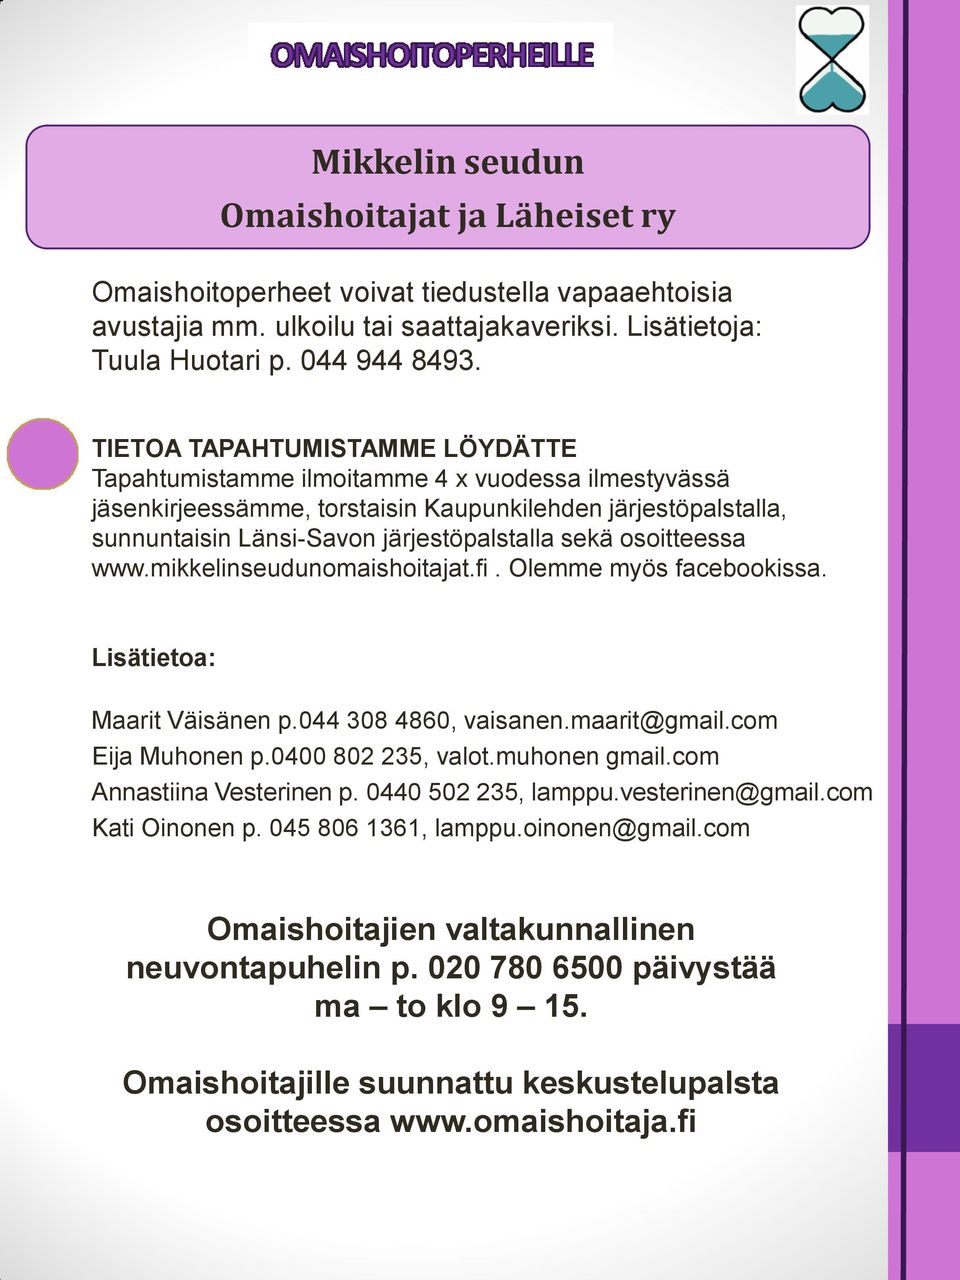 osoitteessa www.mikkelinseudunomaishoitajat.fi. Olemme myös facebookissa. Lisätietoa: Maarit Väisänen p.044 308 4860, vaisanen.maarit@gmail.com Eija Muhonen p.0400 802 235, valot.muhonen gmail.